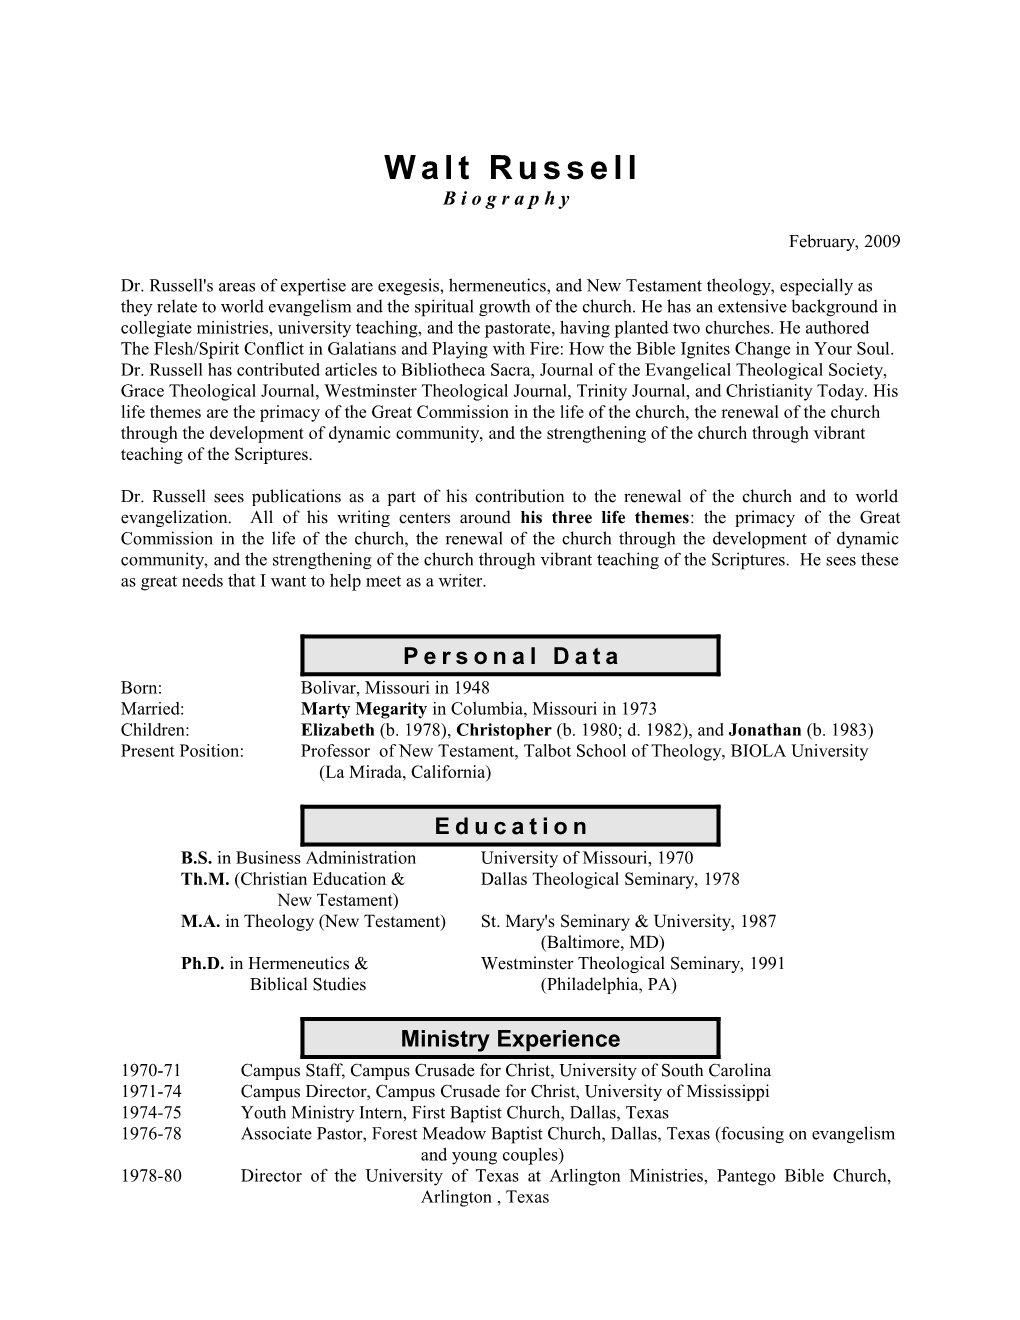 Writing Resumé of Walt Russell1